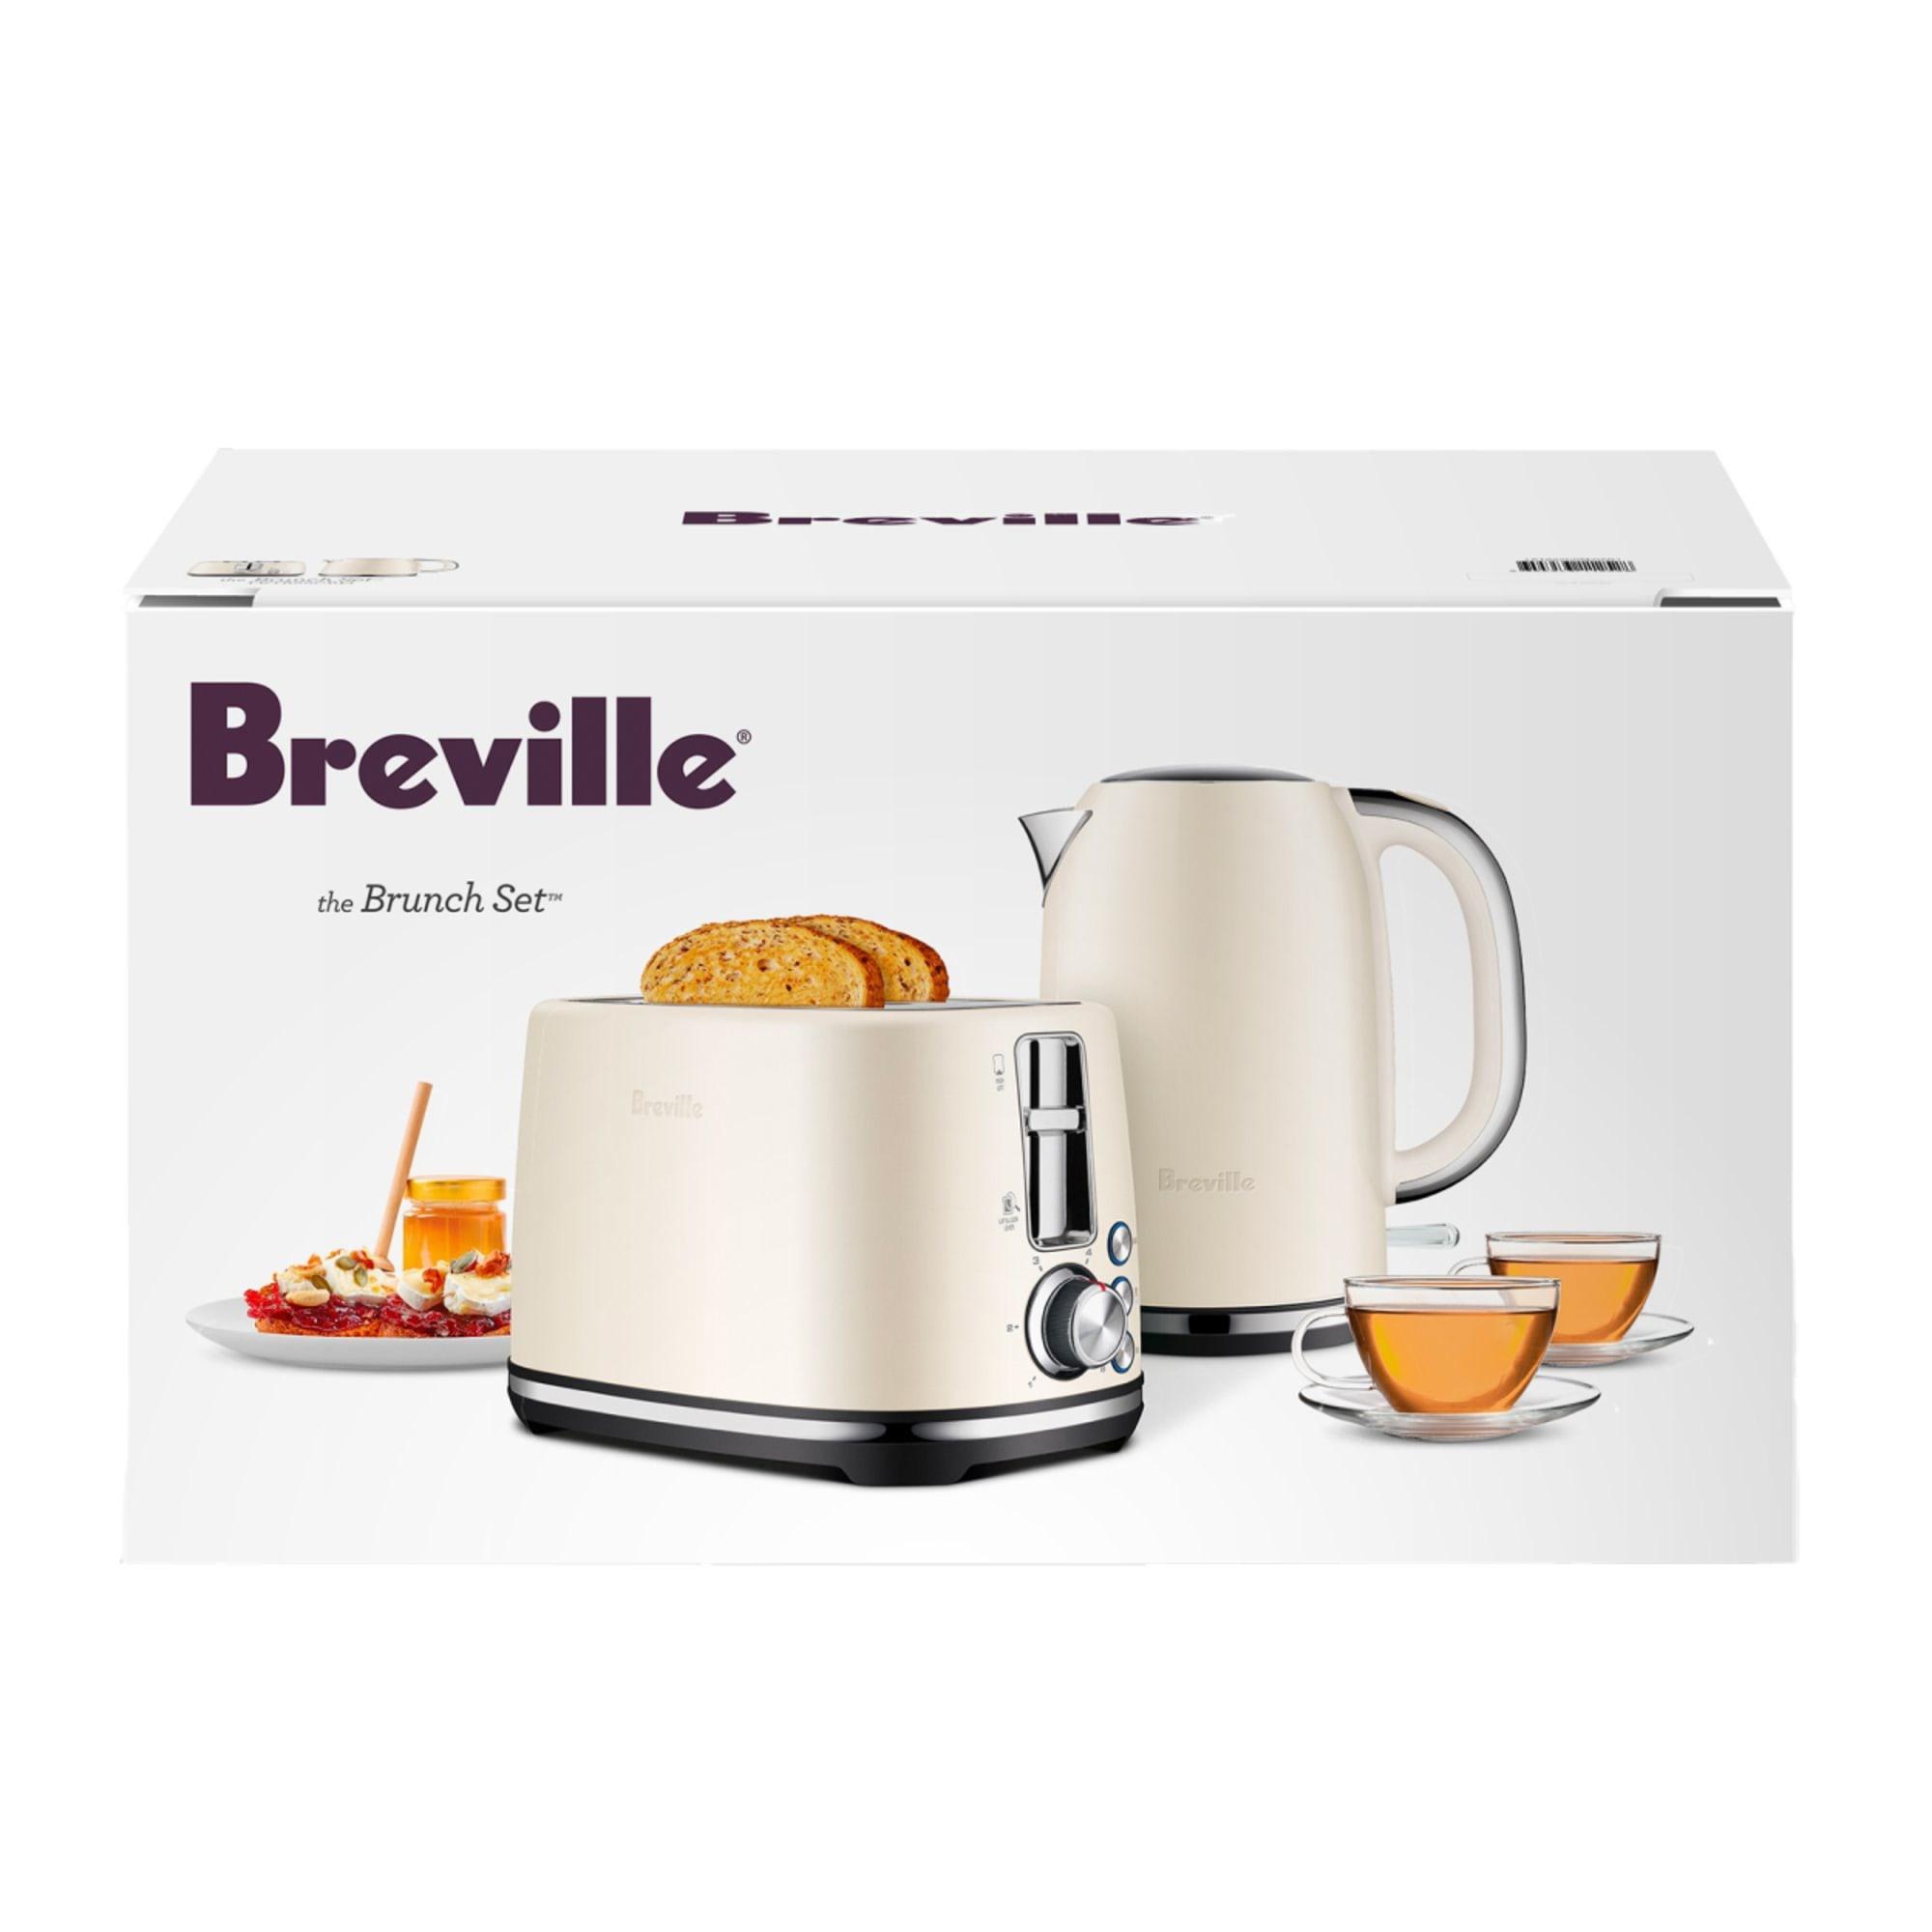 Breville The Brunch Set Cream Image 5